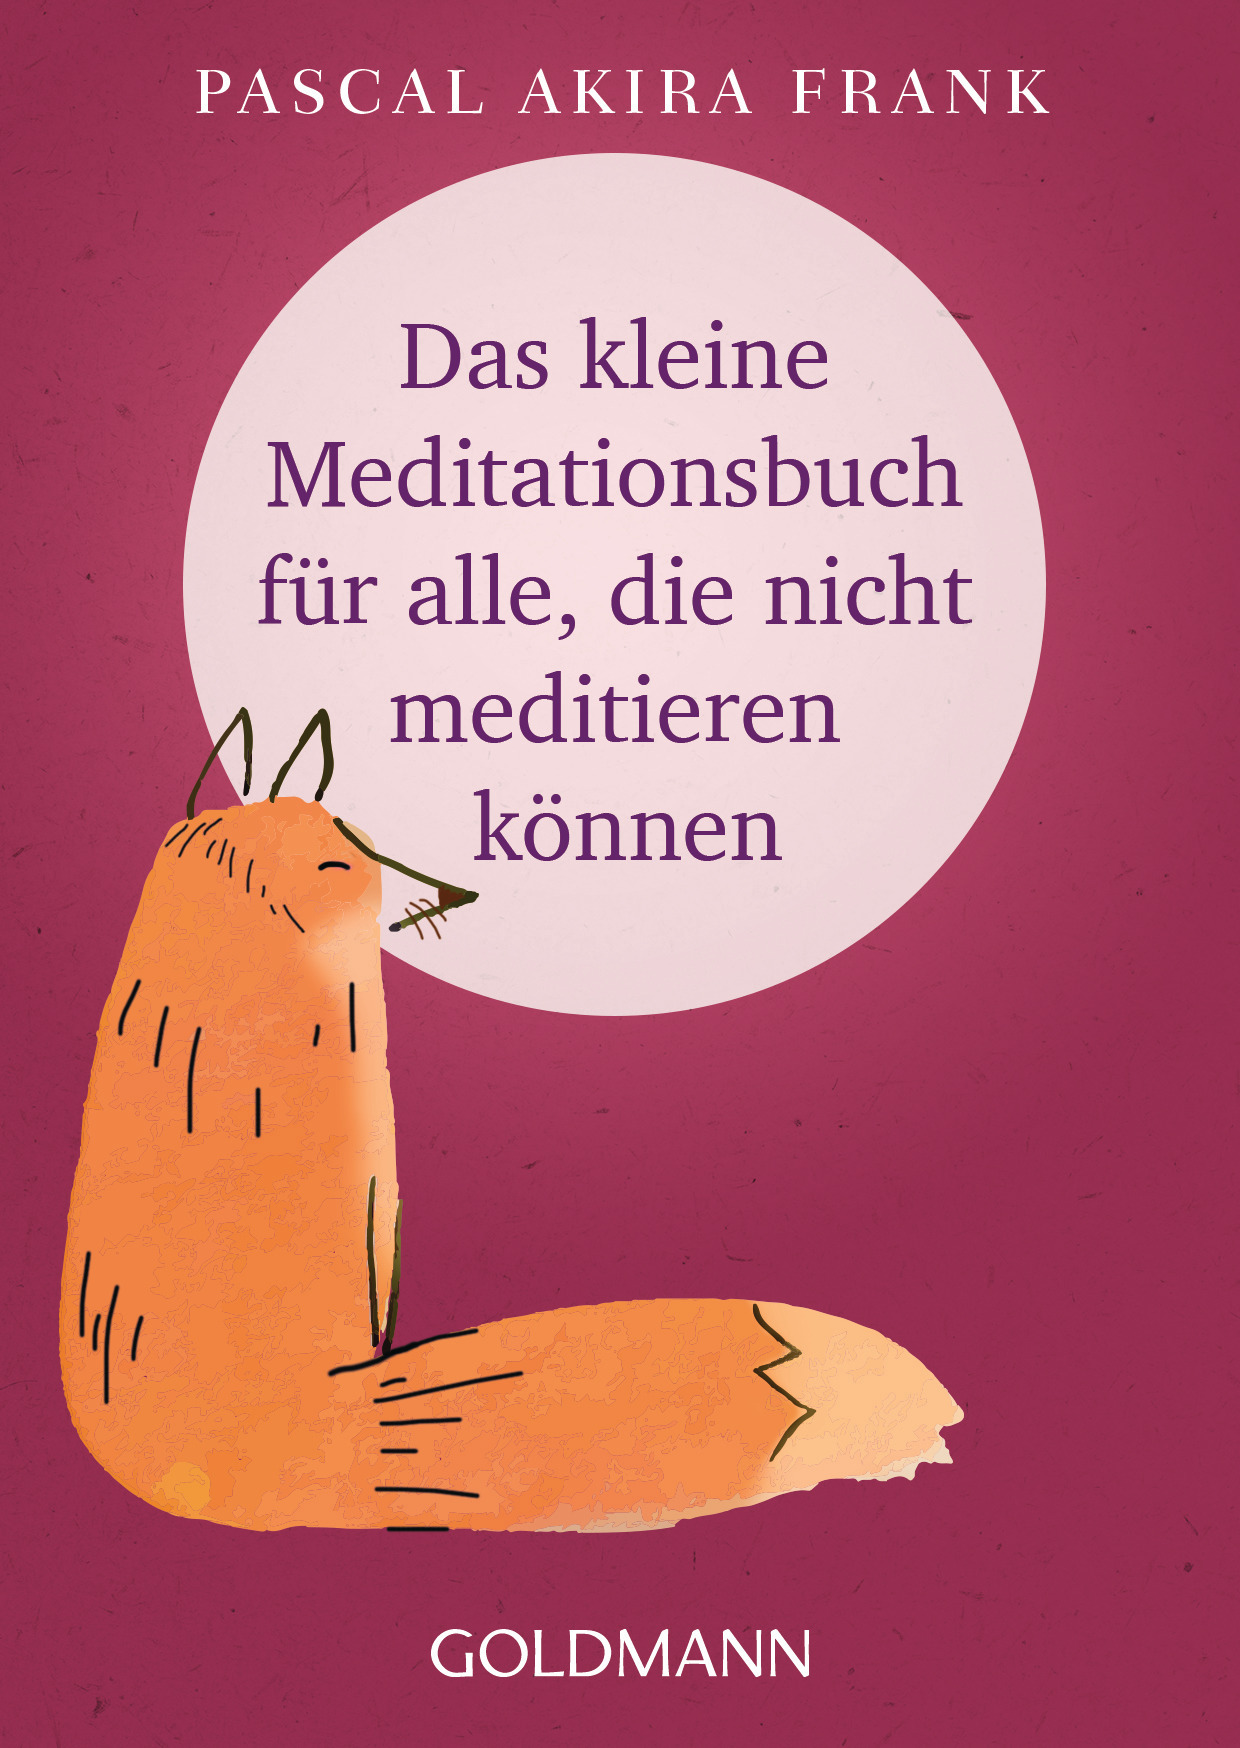 Pascal Akira Frank: Das kleine Meditationsbuch für alle, die nicht meditieren können